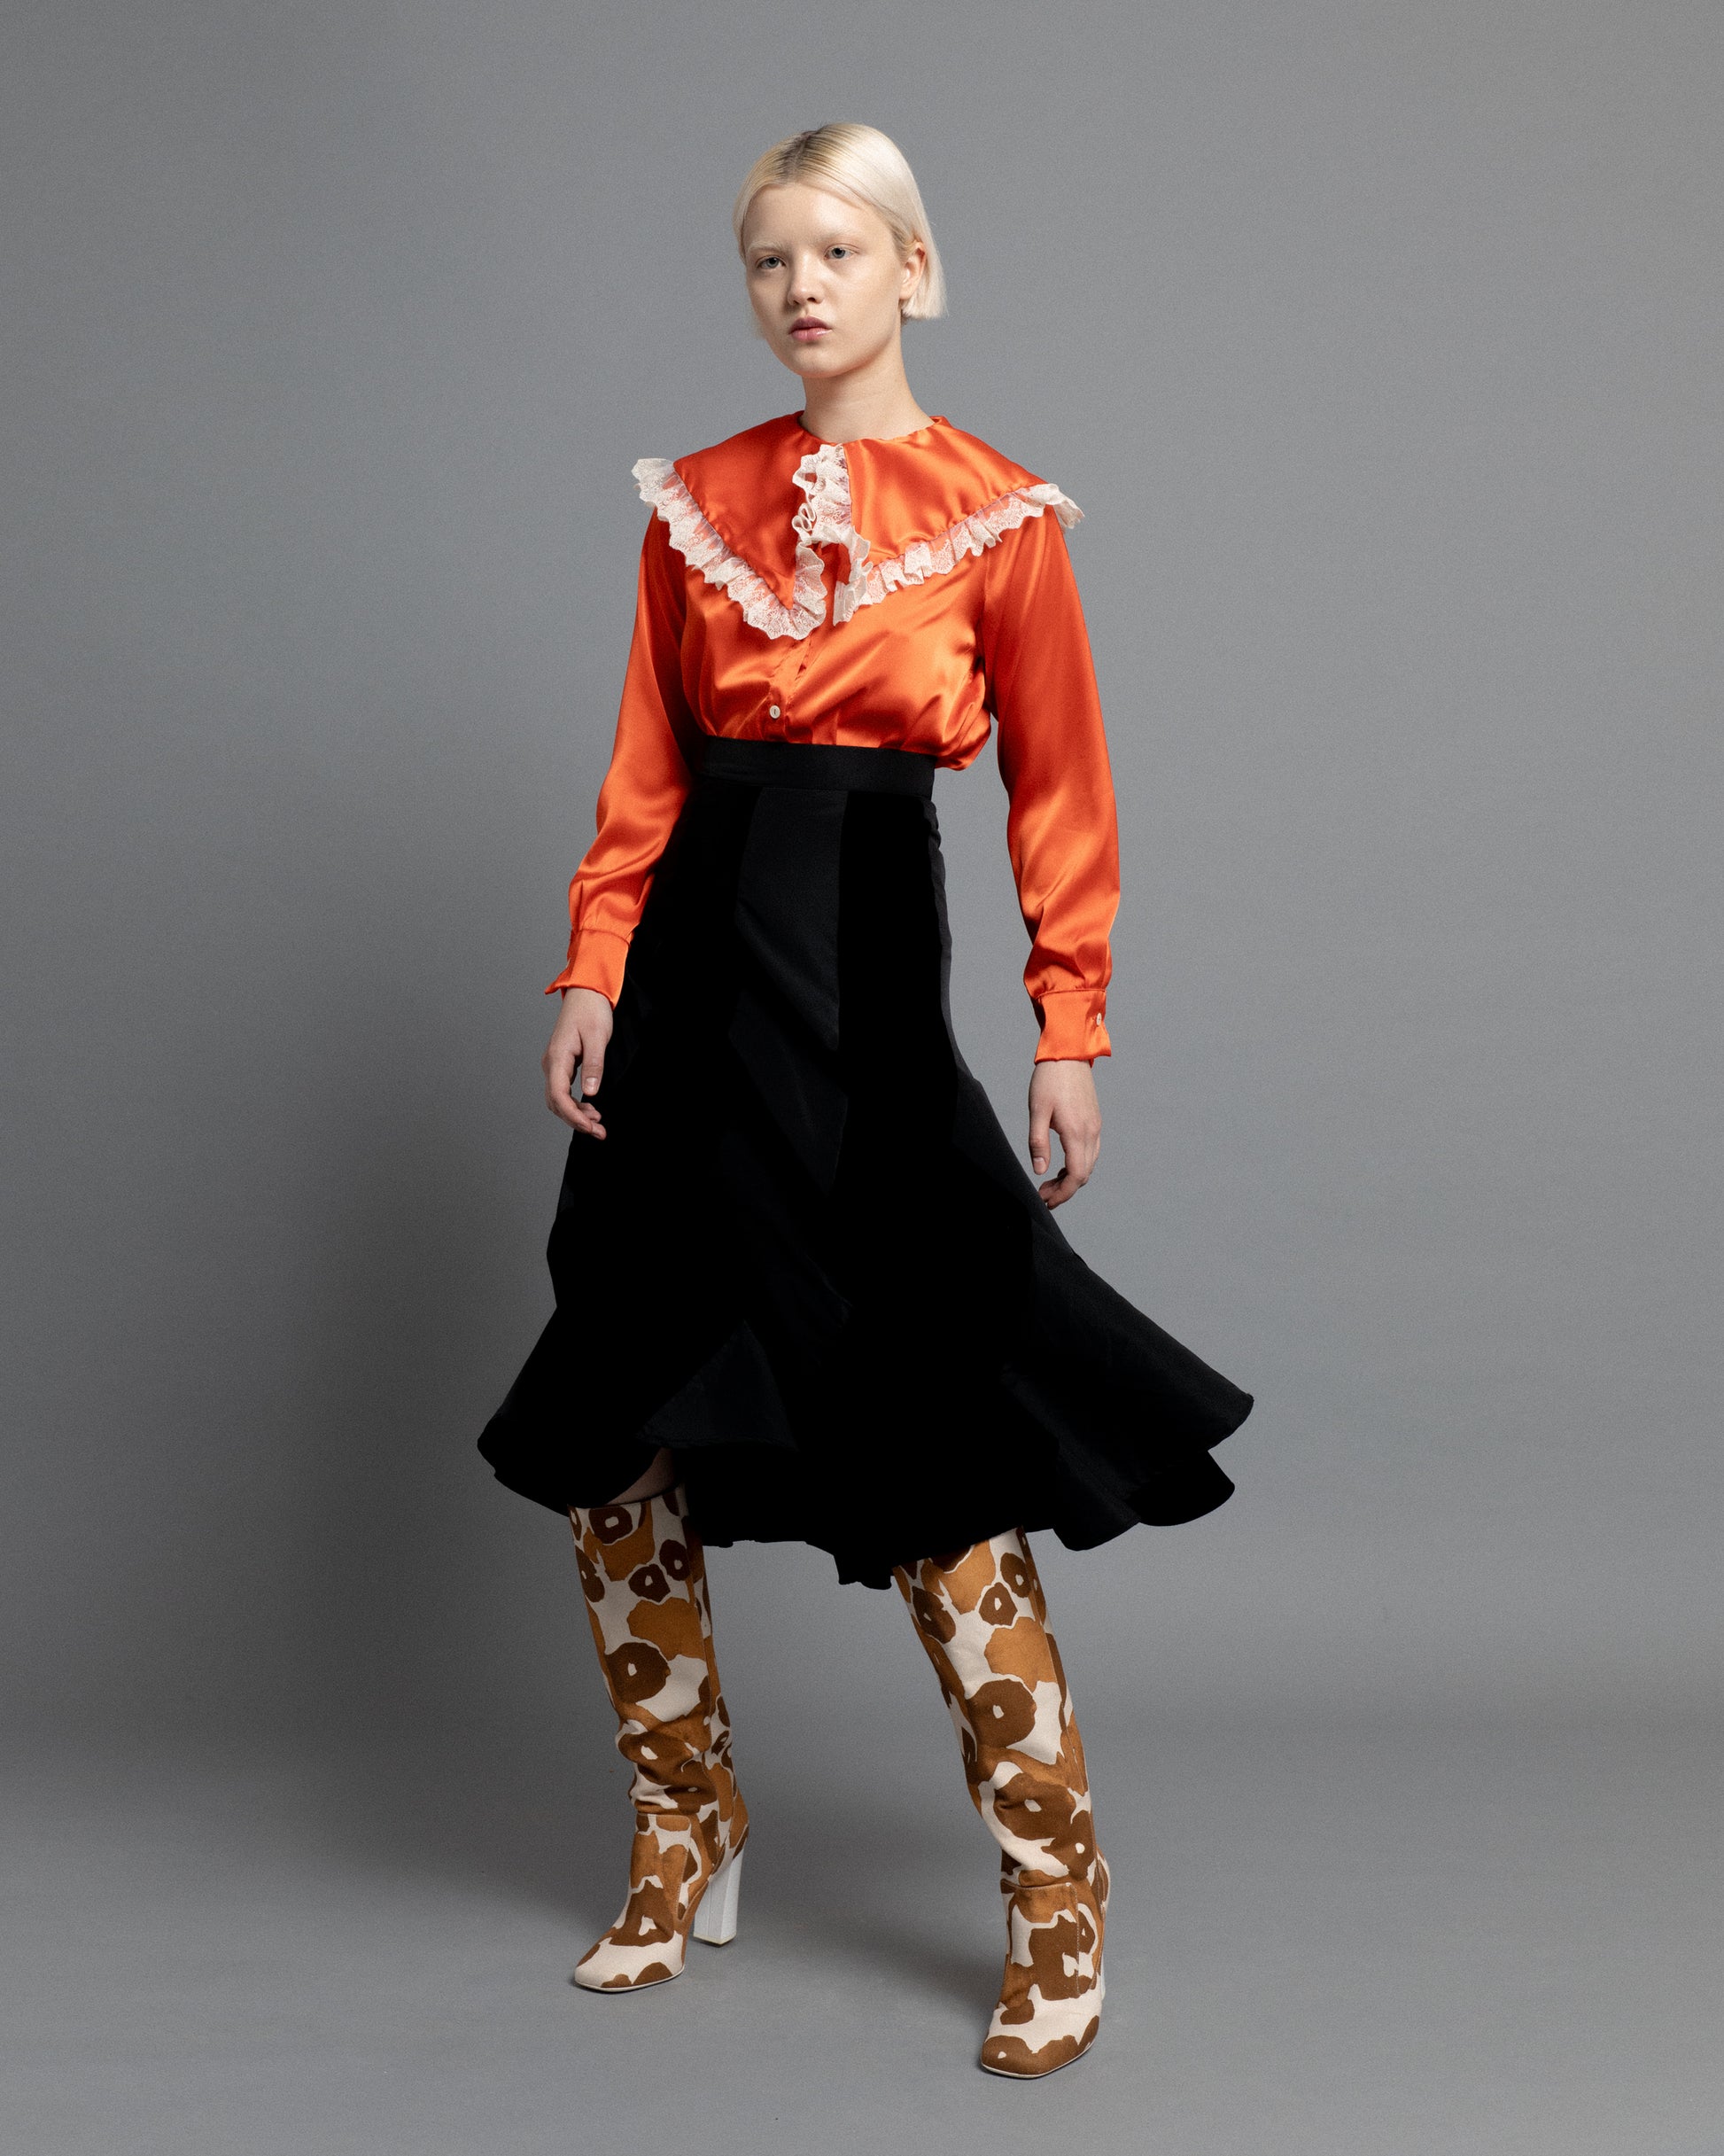 Flared midi skirt in velvet and taffeta with asymmetric pattern. 